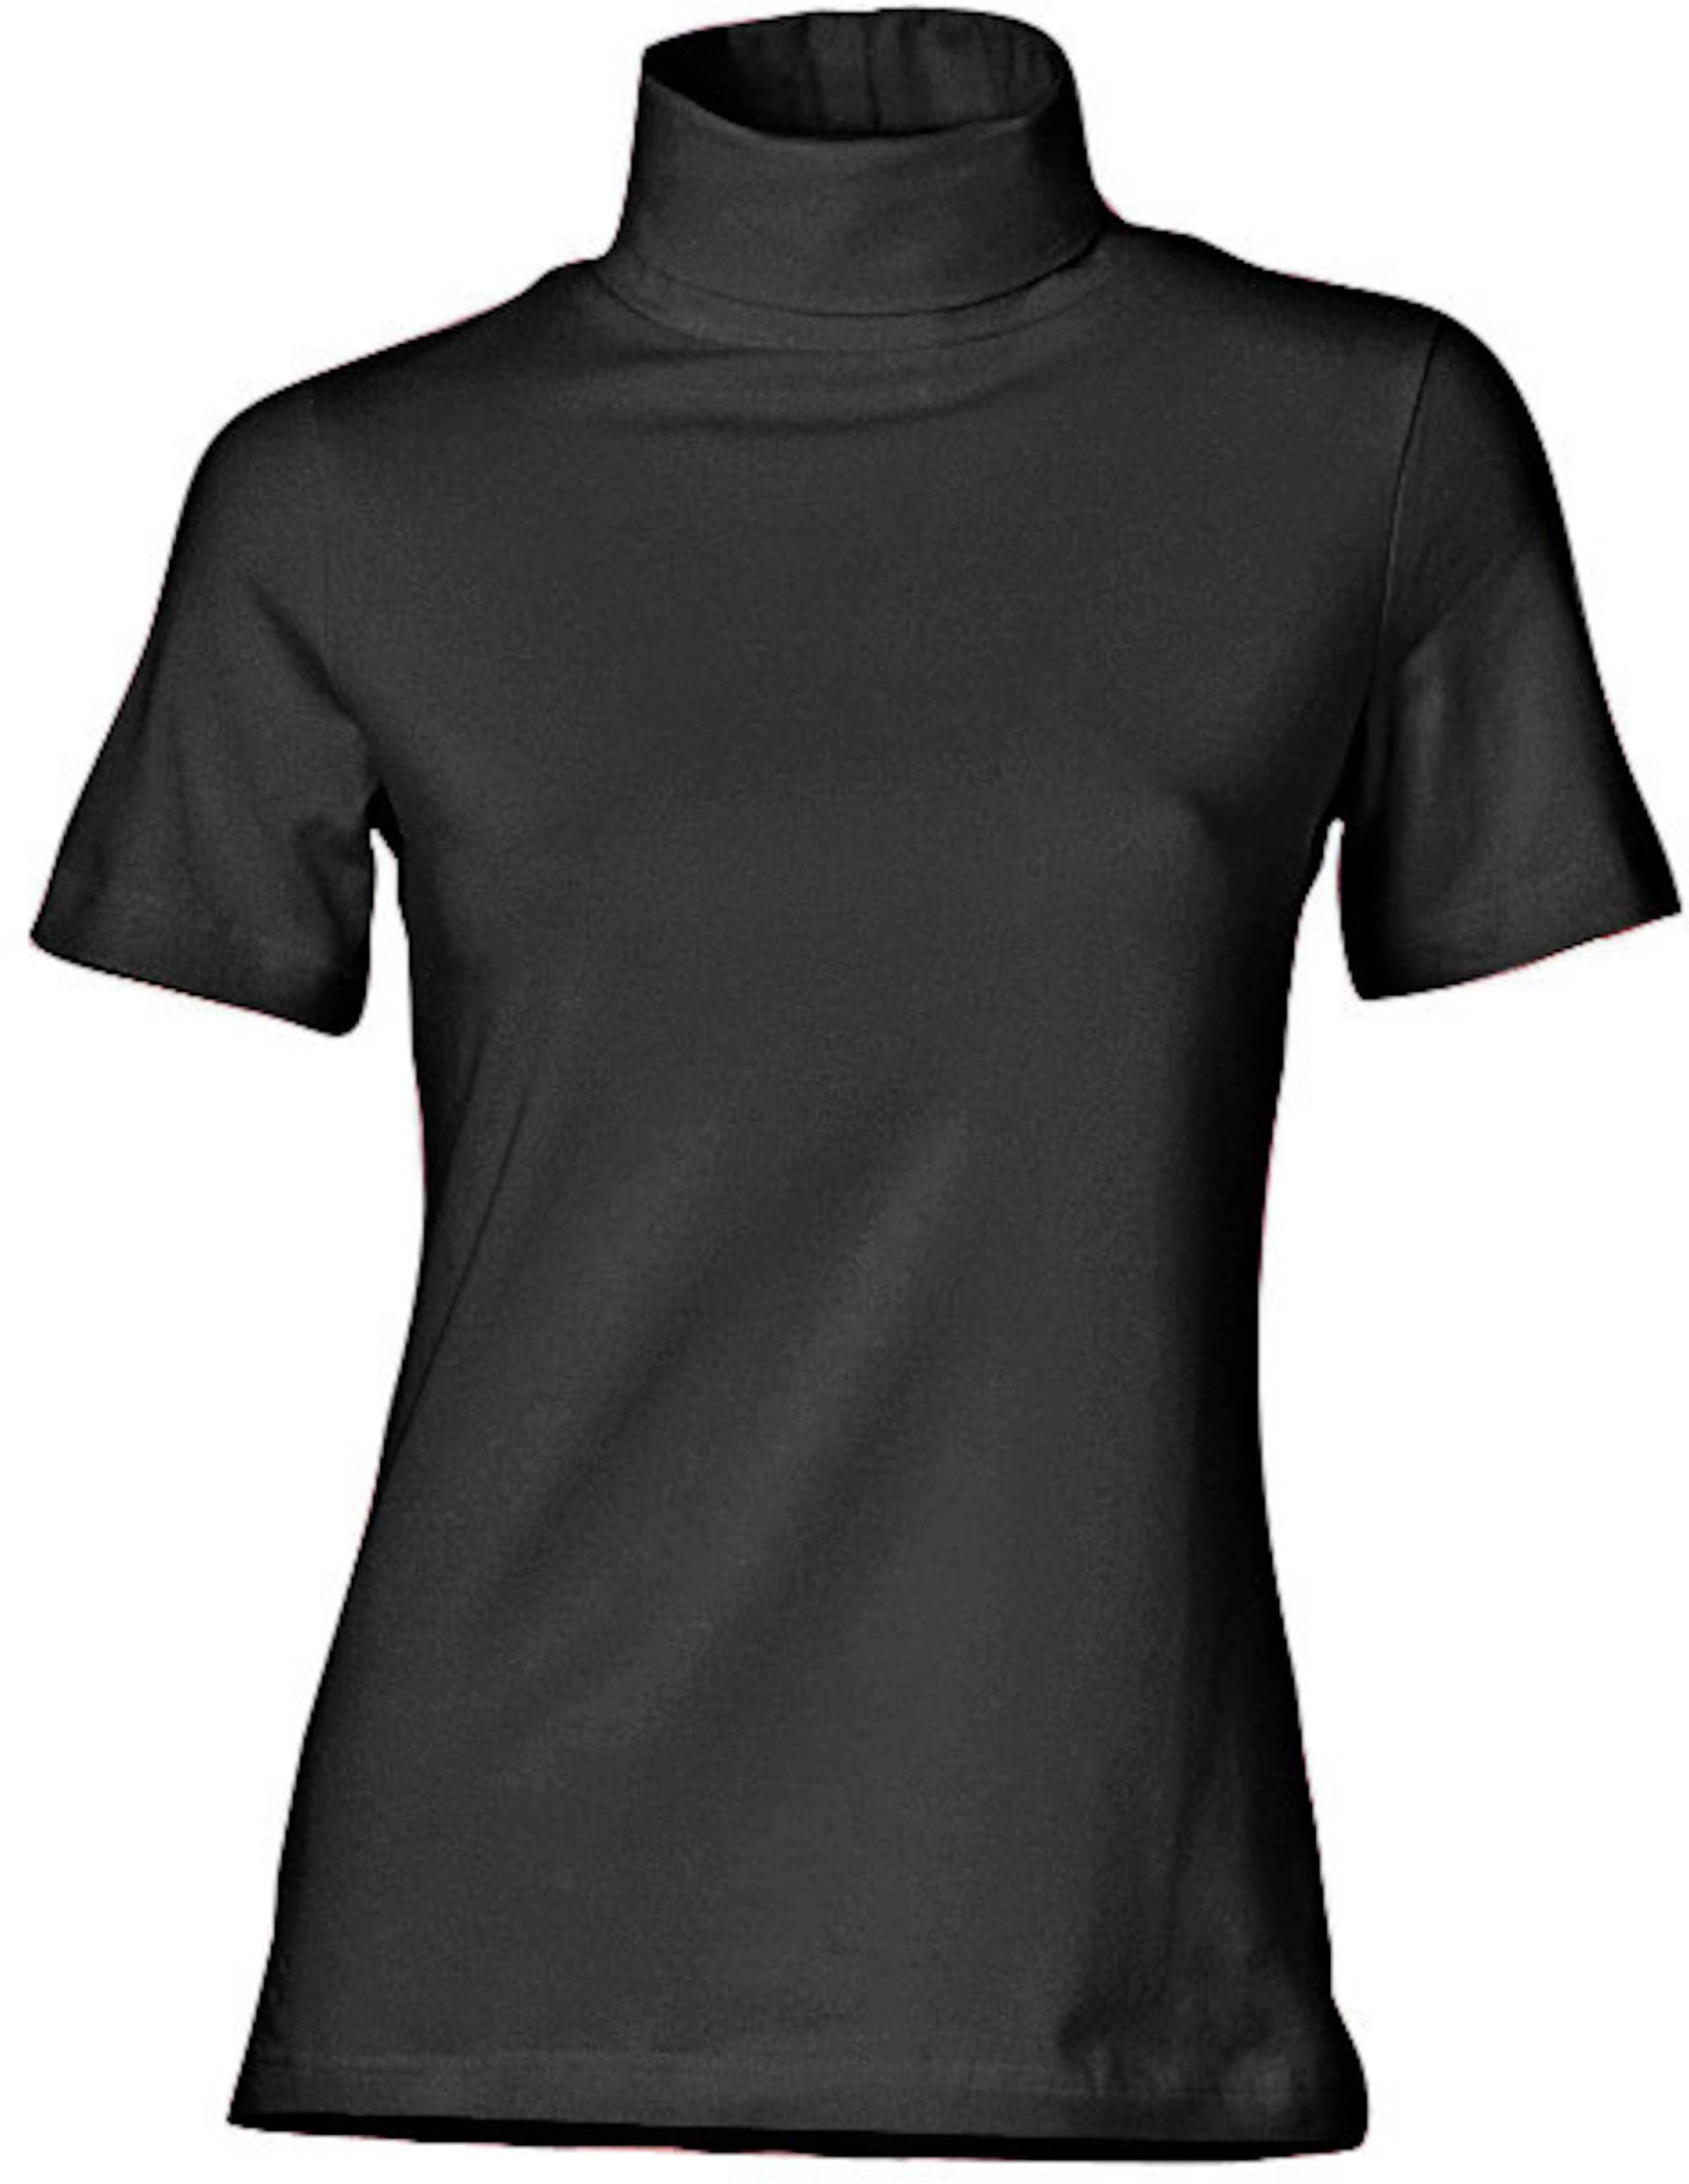 Rollkragen-Shirt in schwarz von heine